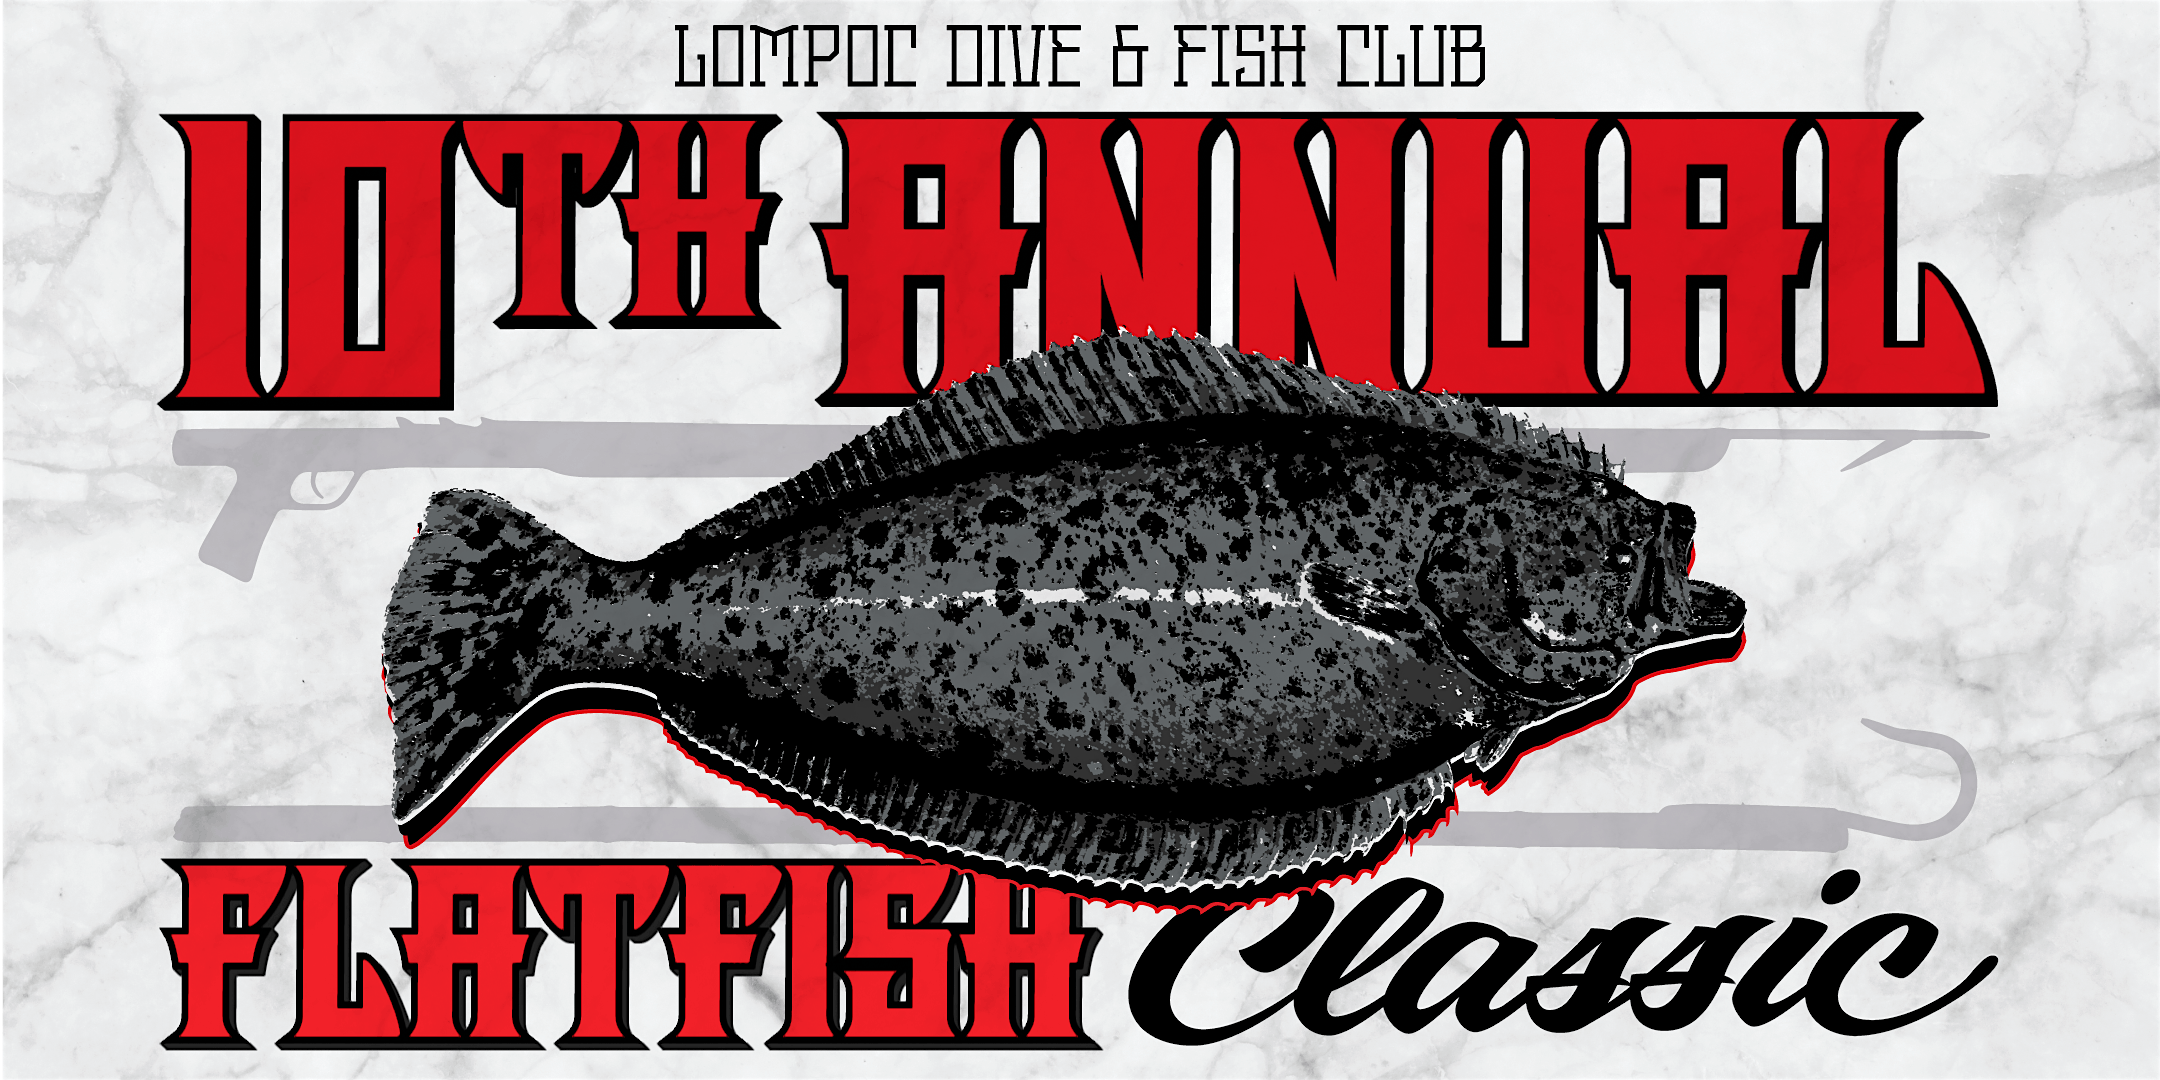 10th Annual Flat Fish Classic